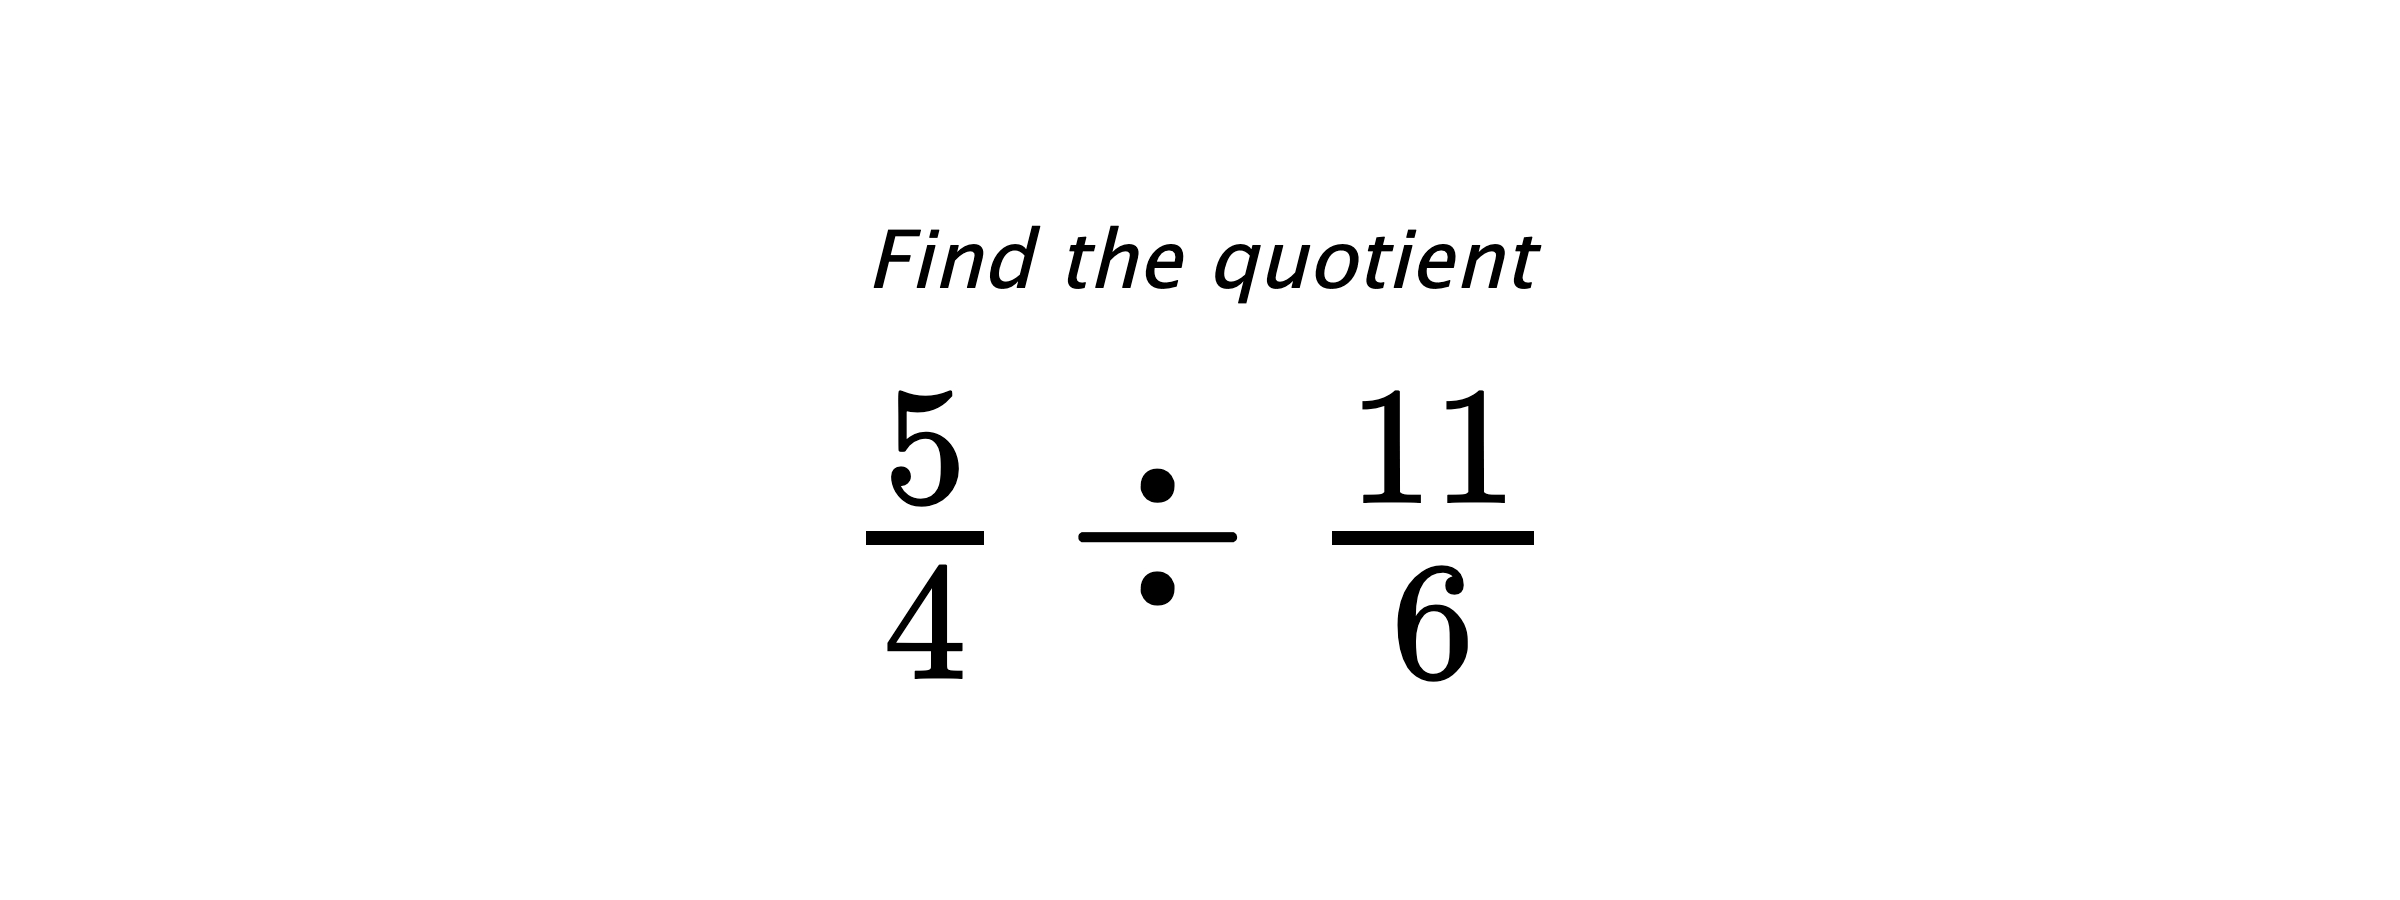 Find the quotient $ \frac{5}{4} \div \frac{11}{6} $